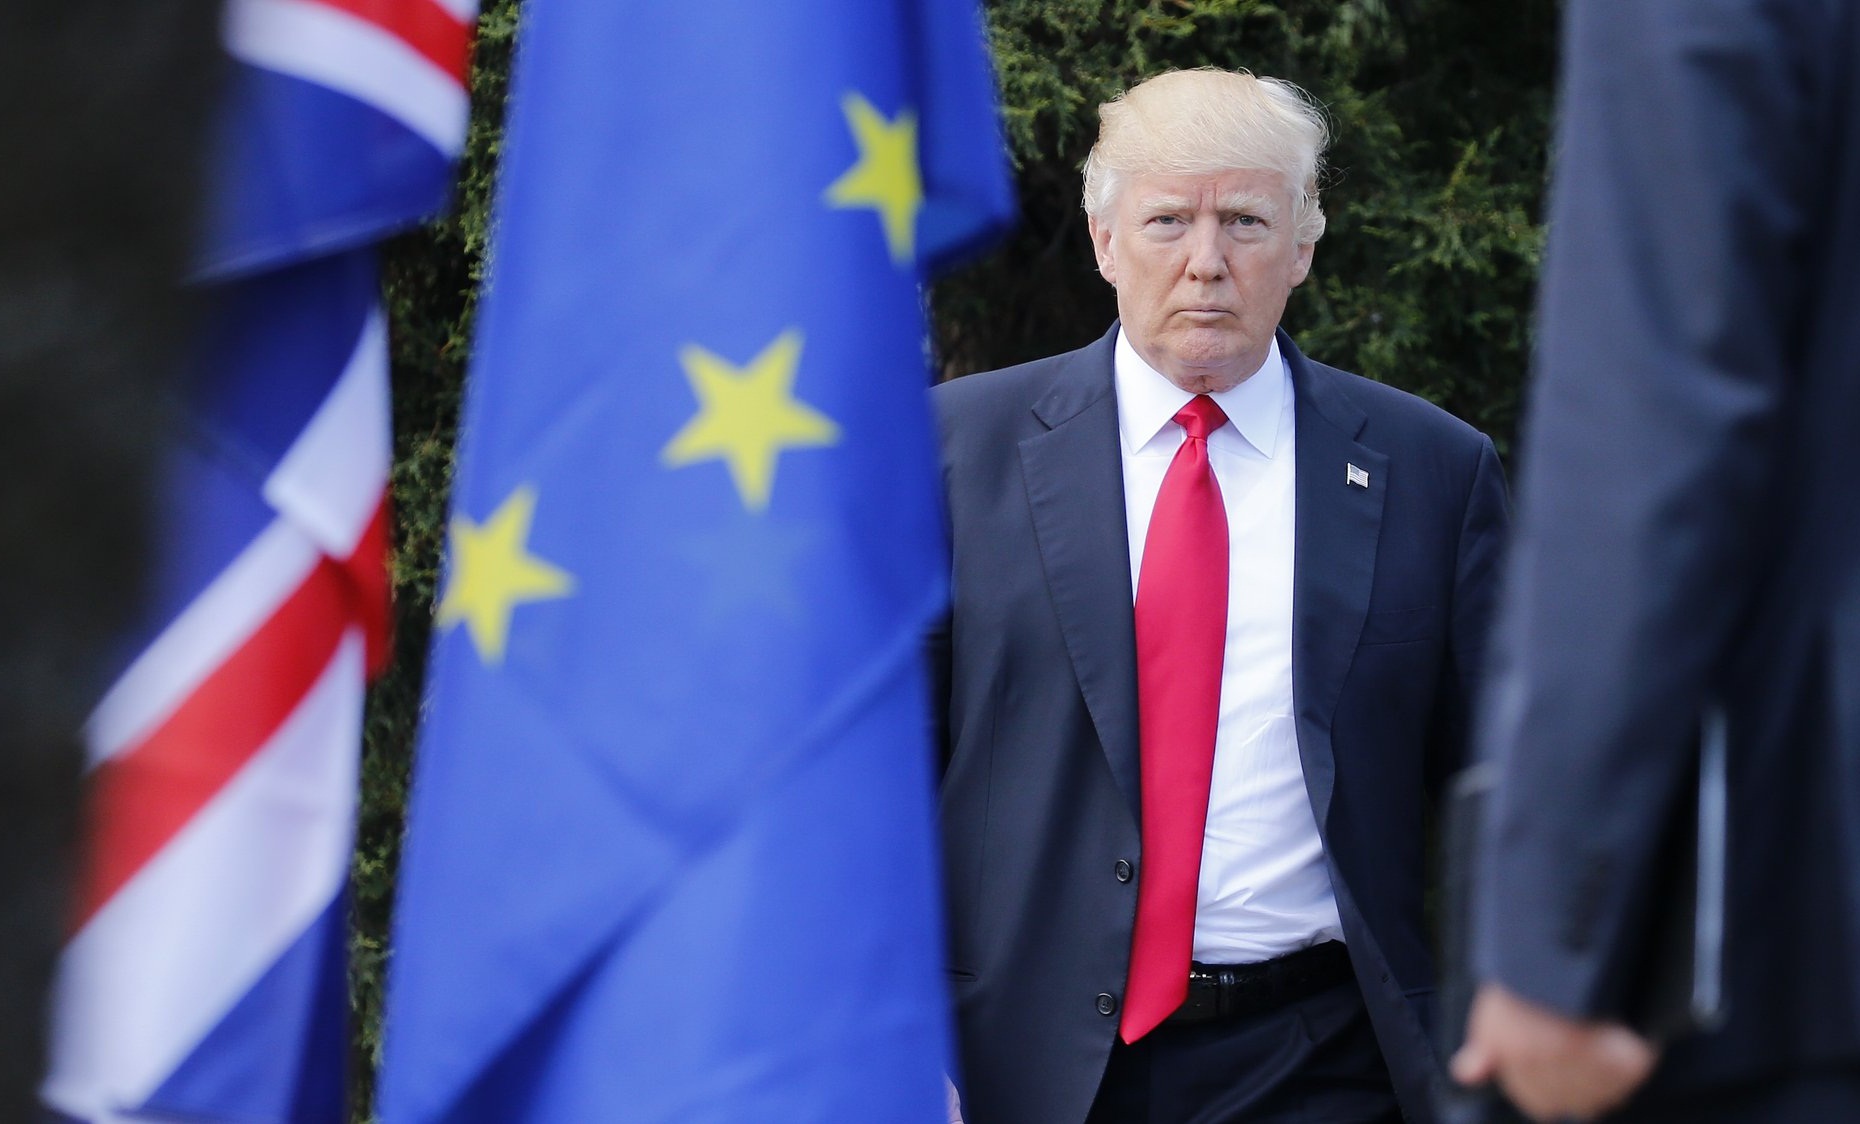 اروپا؛ در مسیر تقابل یا تعامل با آمریکا؟/ اروپا نسبت به عملکرد آمریکا نگران است؟